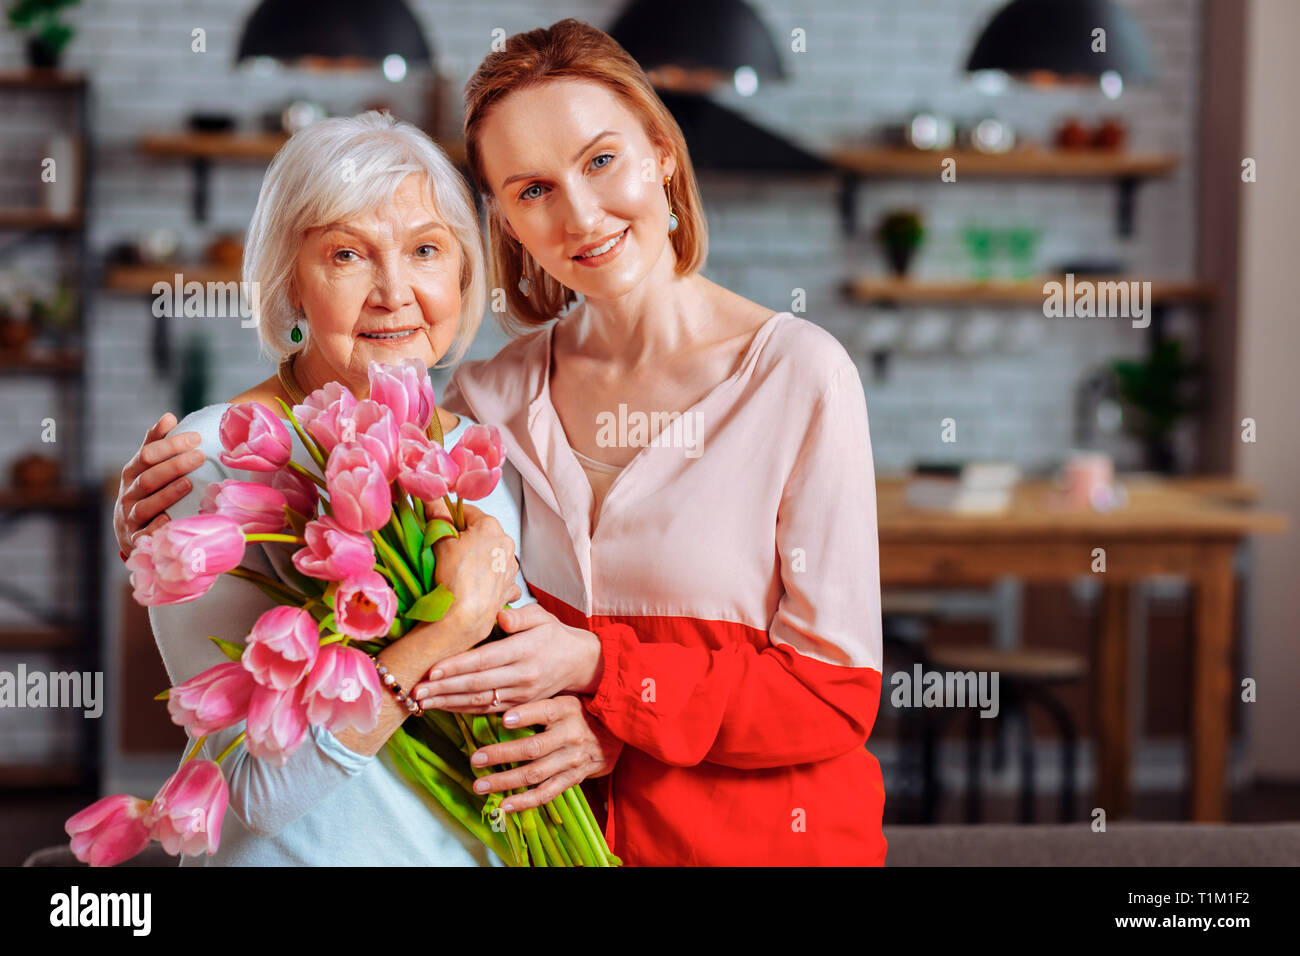 Attraktive Tochter mit Silber posing blonde Mutter mit Tulpen Blumenstrauß Stockfoto